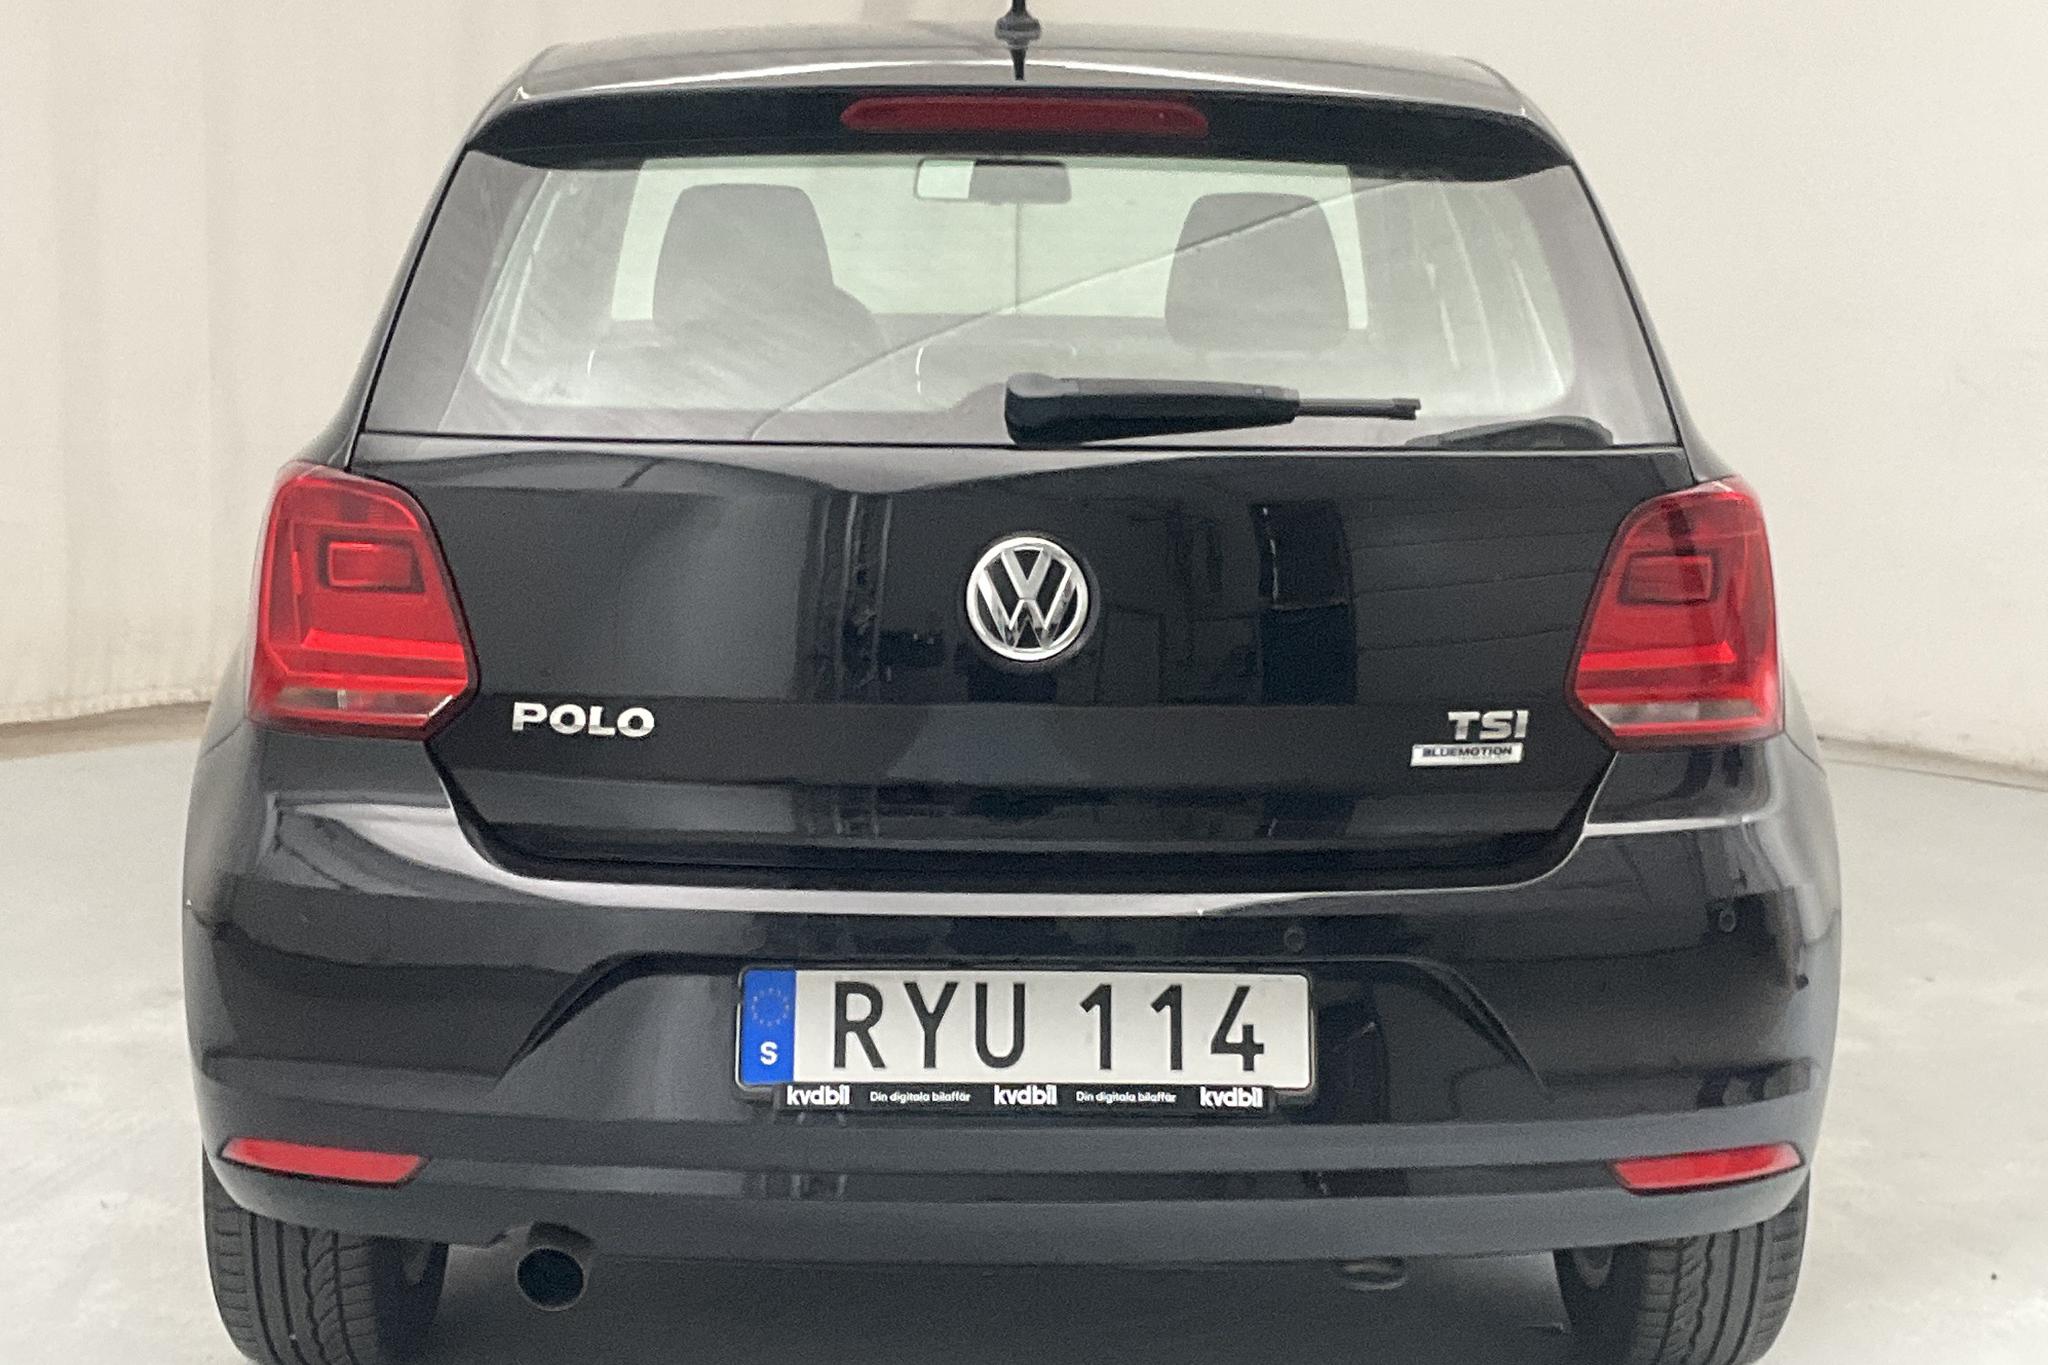 VW Polo 1.2 TSI 5dr (90hk) - 45 490 km - Automatic - black - 2016